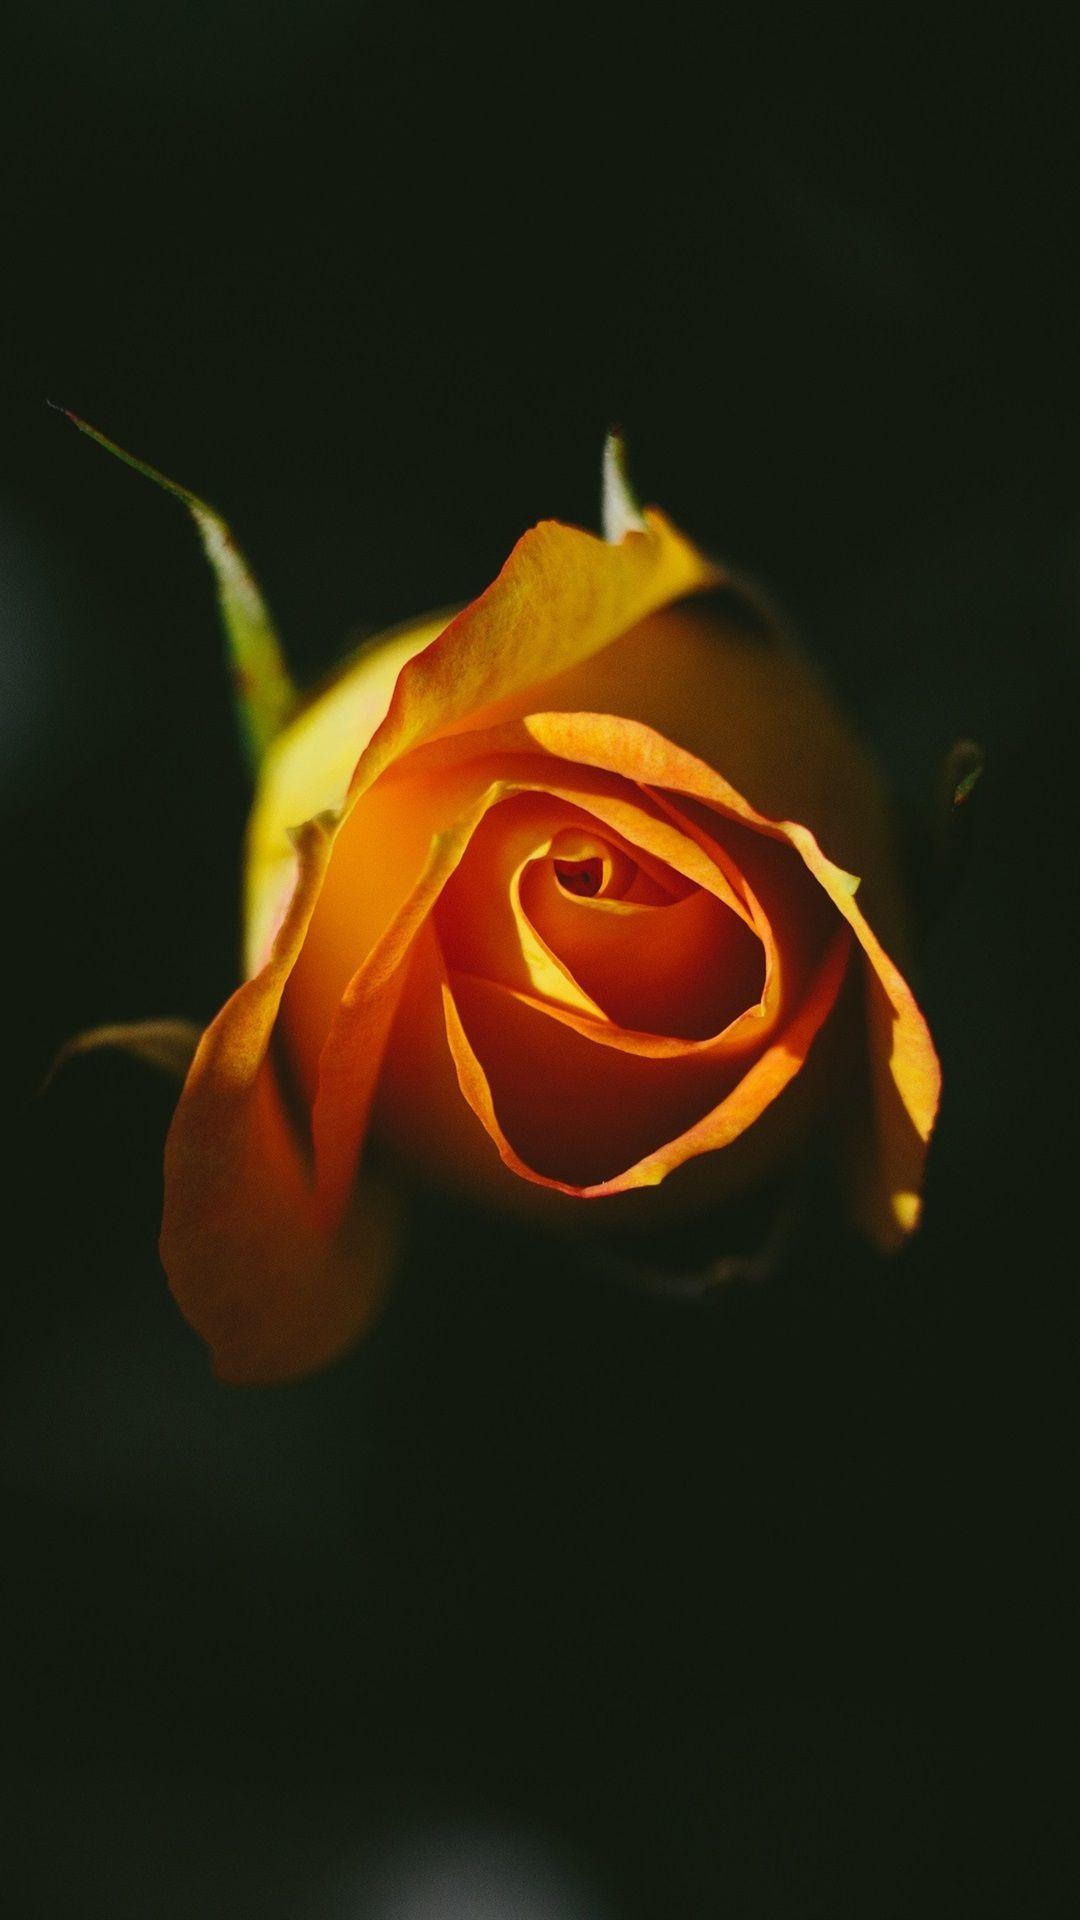 1080x1920 Orange Rose, Black Background 1080x1920 IPhone 8 7 6 6S Plus Wallpaper, Bối cảnh, Hình ảnh, Hình ảnh